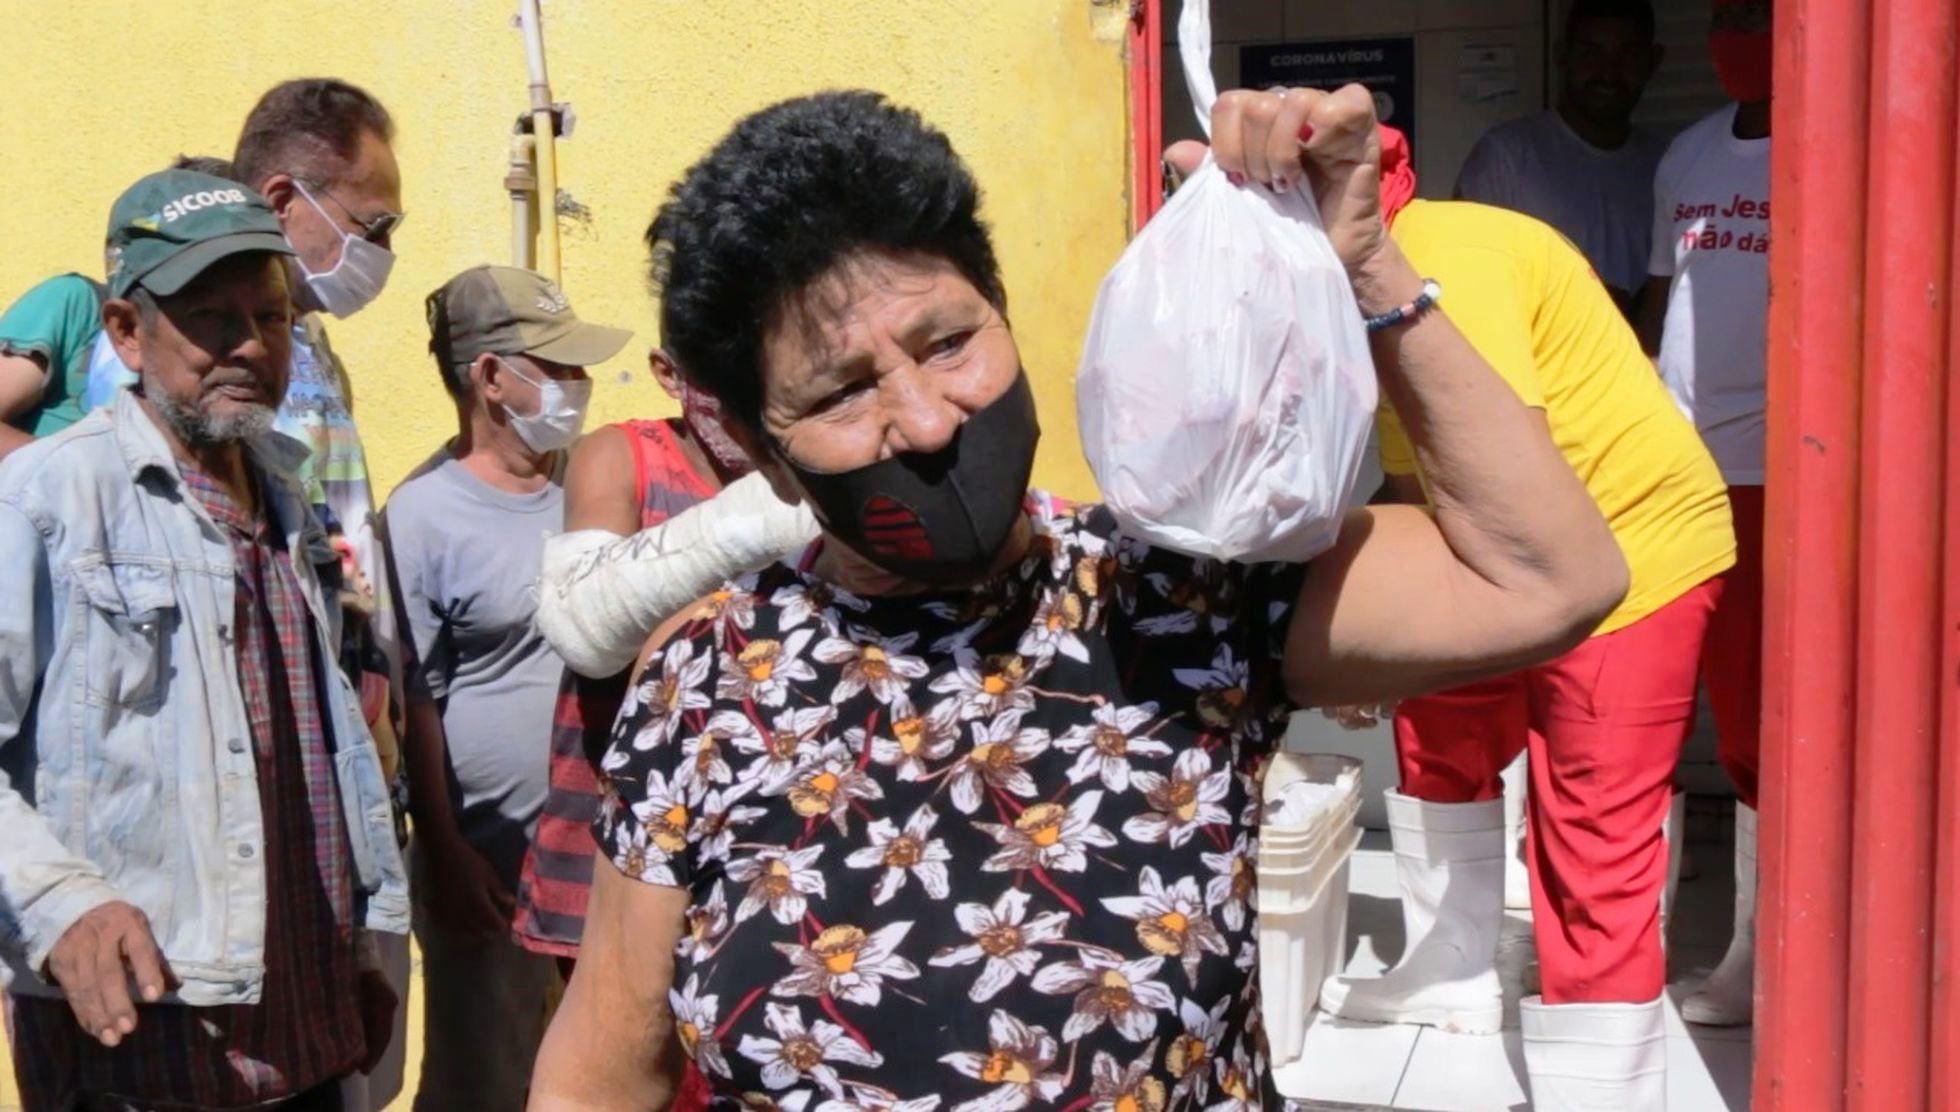 Ossos de boi, arroz e feijão quebrado formam cardápio de um Brasil que empobrece